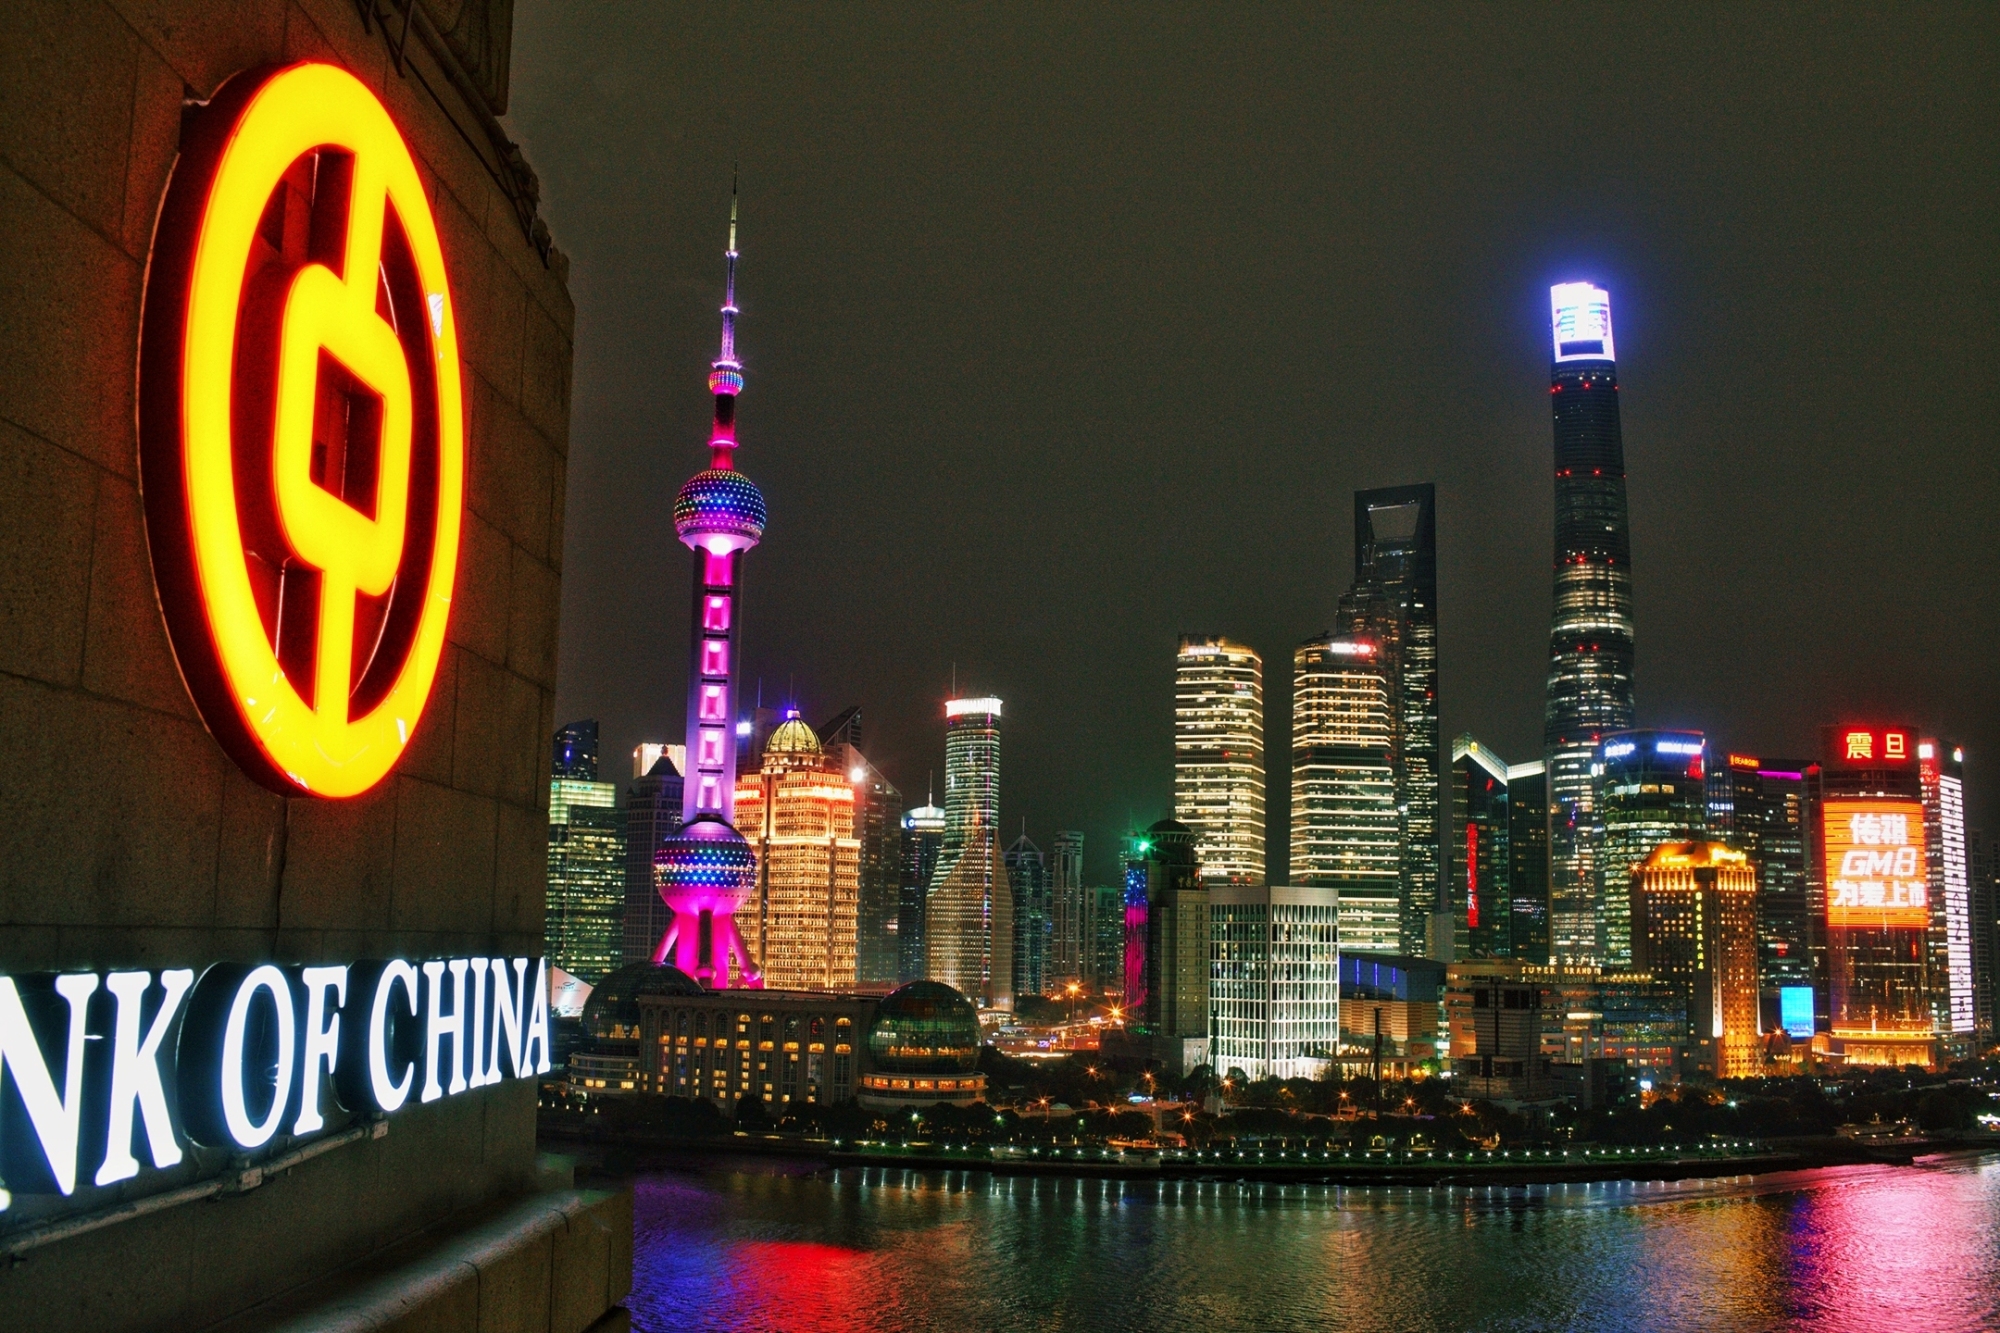 上海夜景-中国金融网首席摄影师王坤摄影-1.jpg